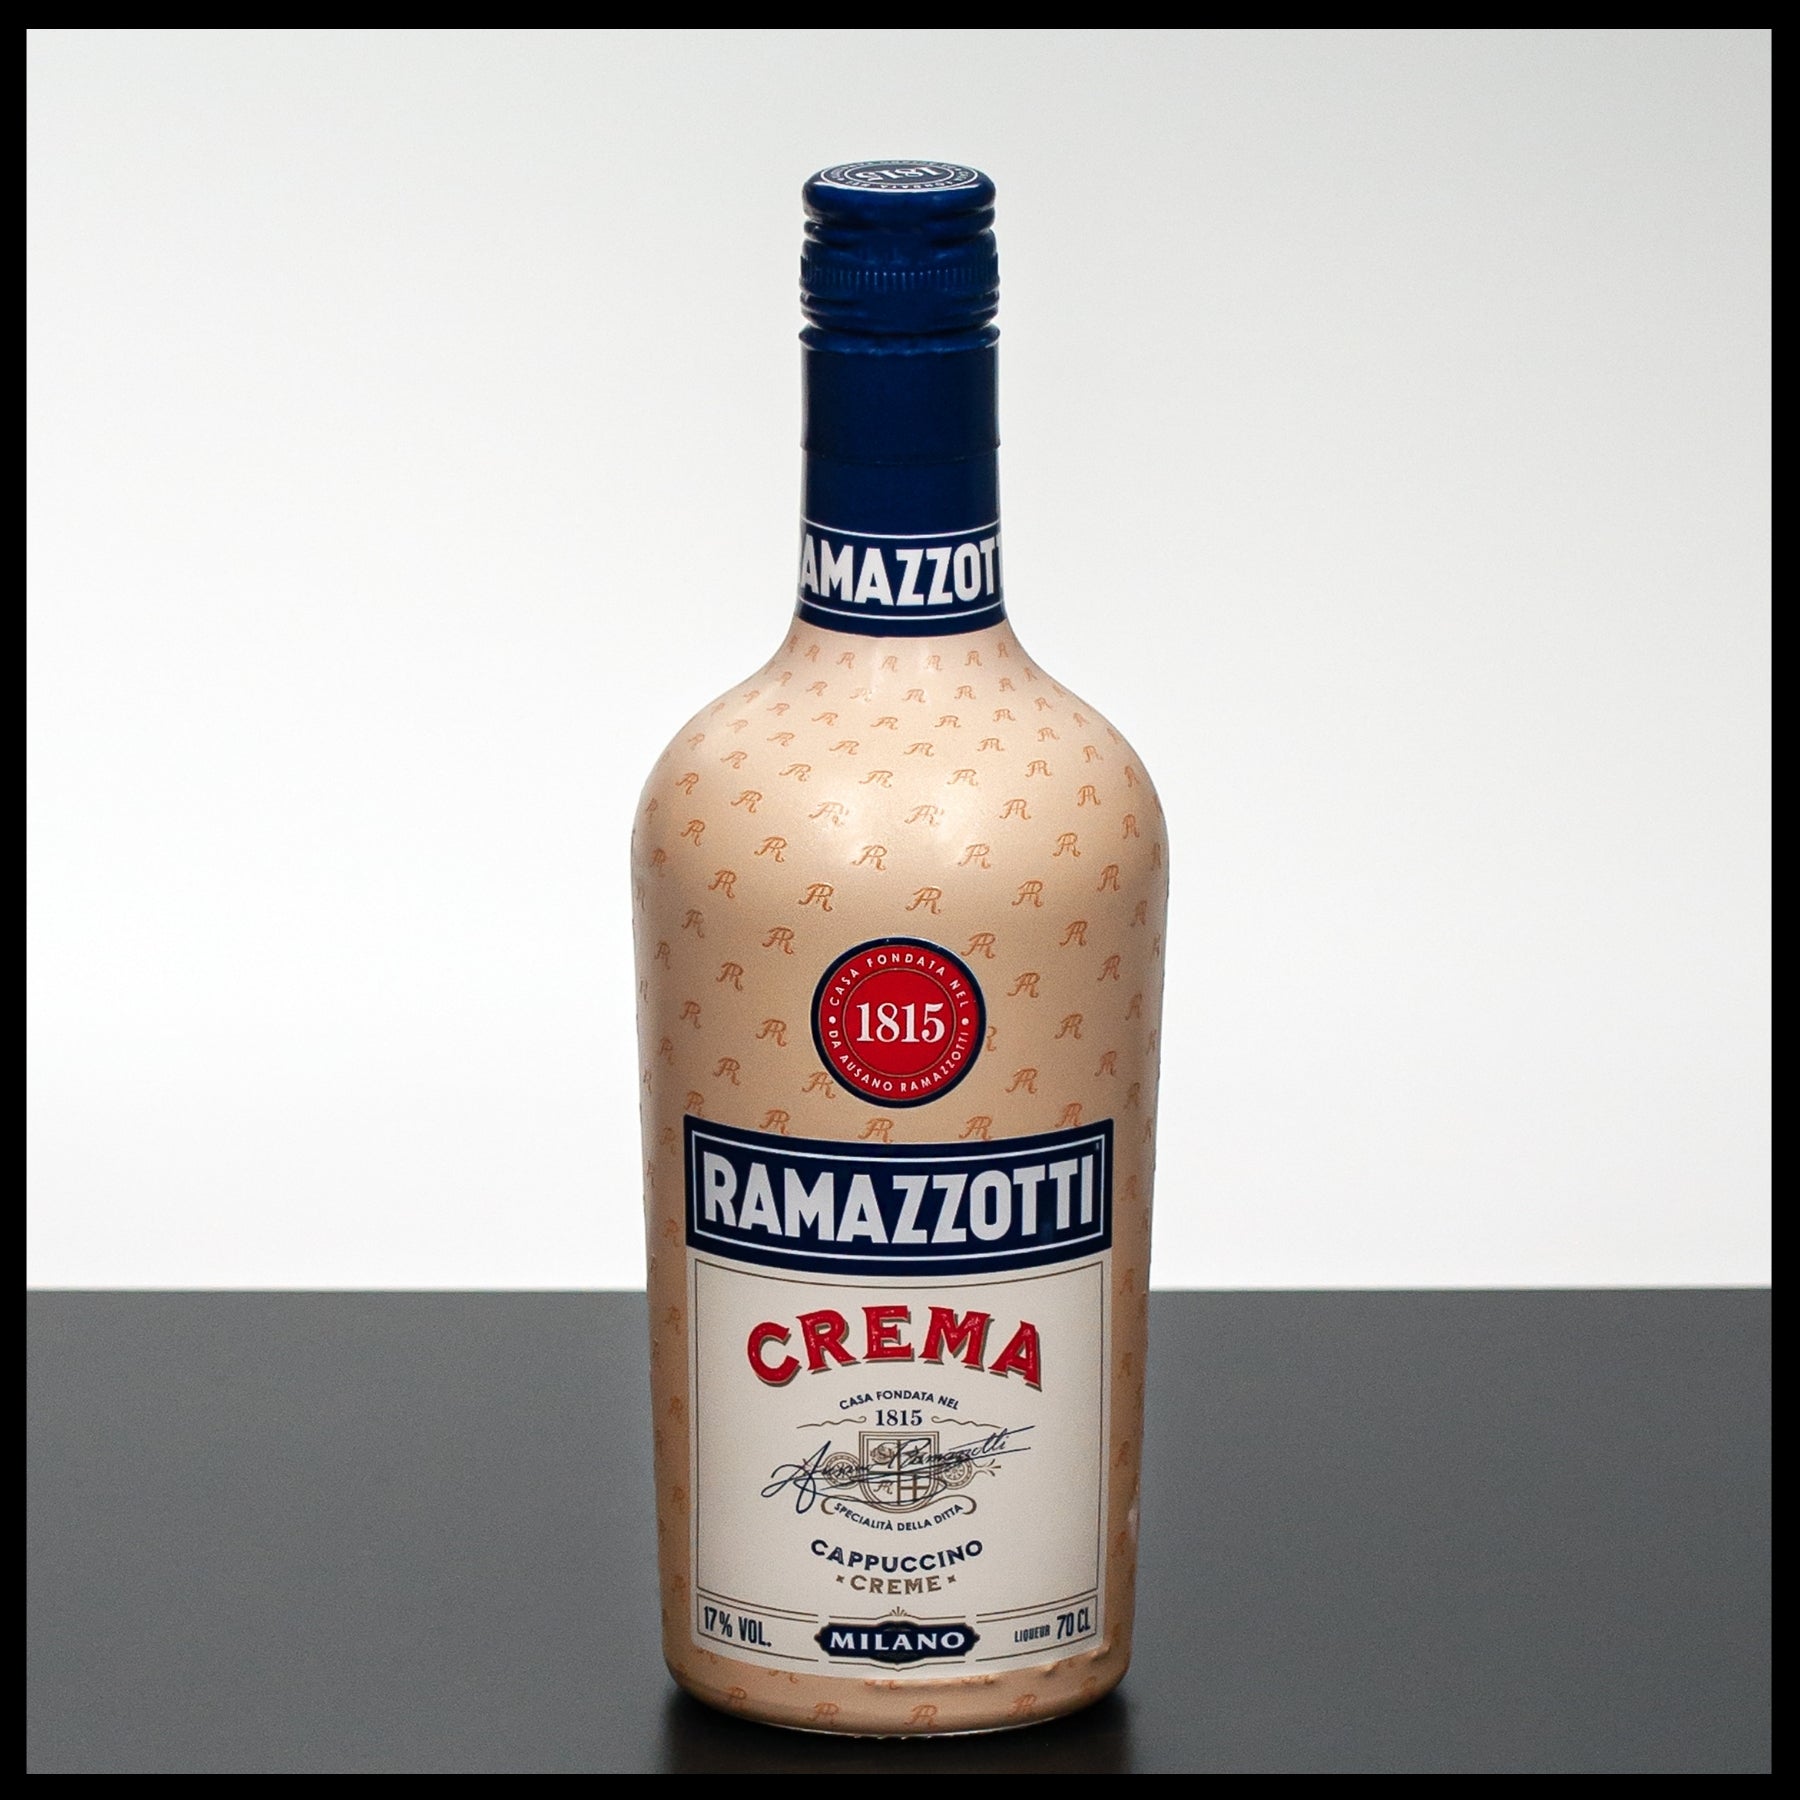 Ramazzotti Crema Cappuccino Creme 0,7L - 17%